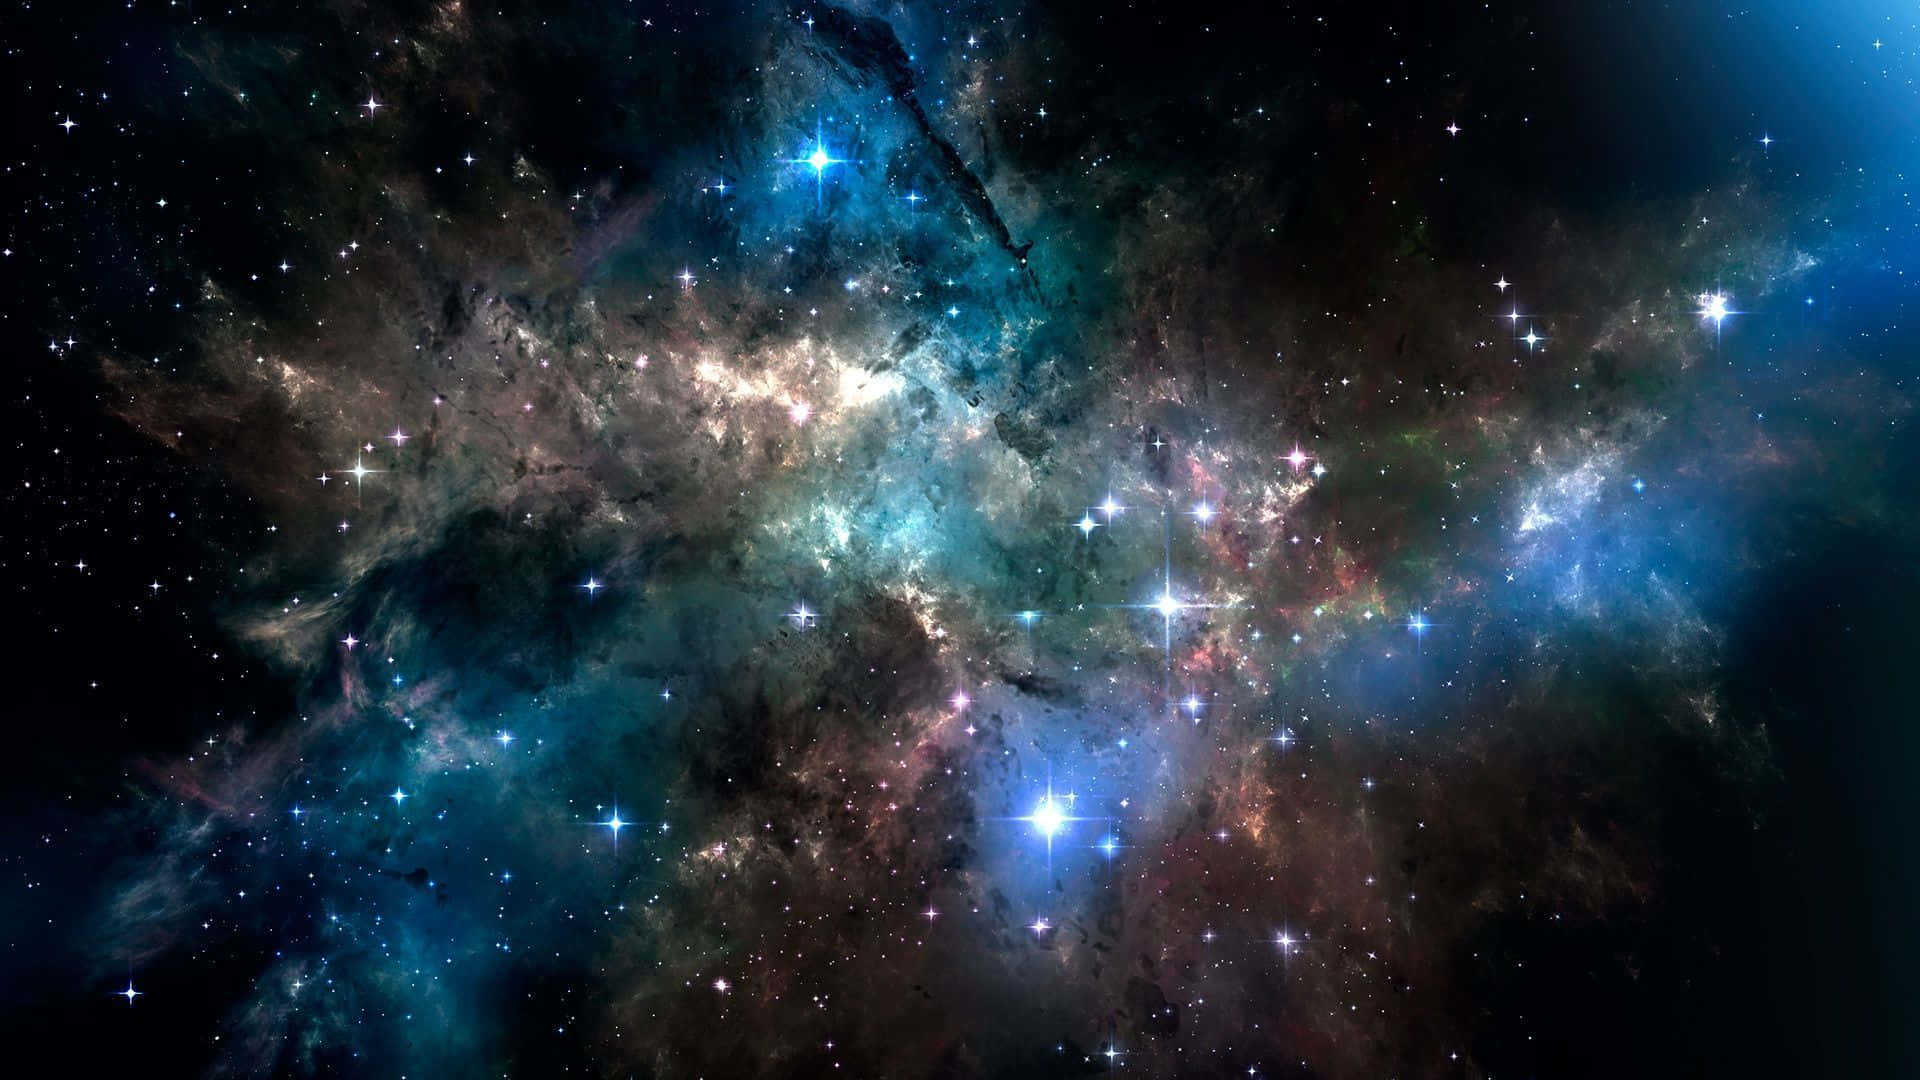 Diekraft Des Kosmos Manifestiert Sich In Diesem Eindrucksvollen Bild Des Echten Weltraums. Wallpaper